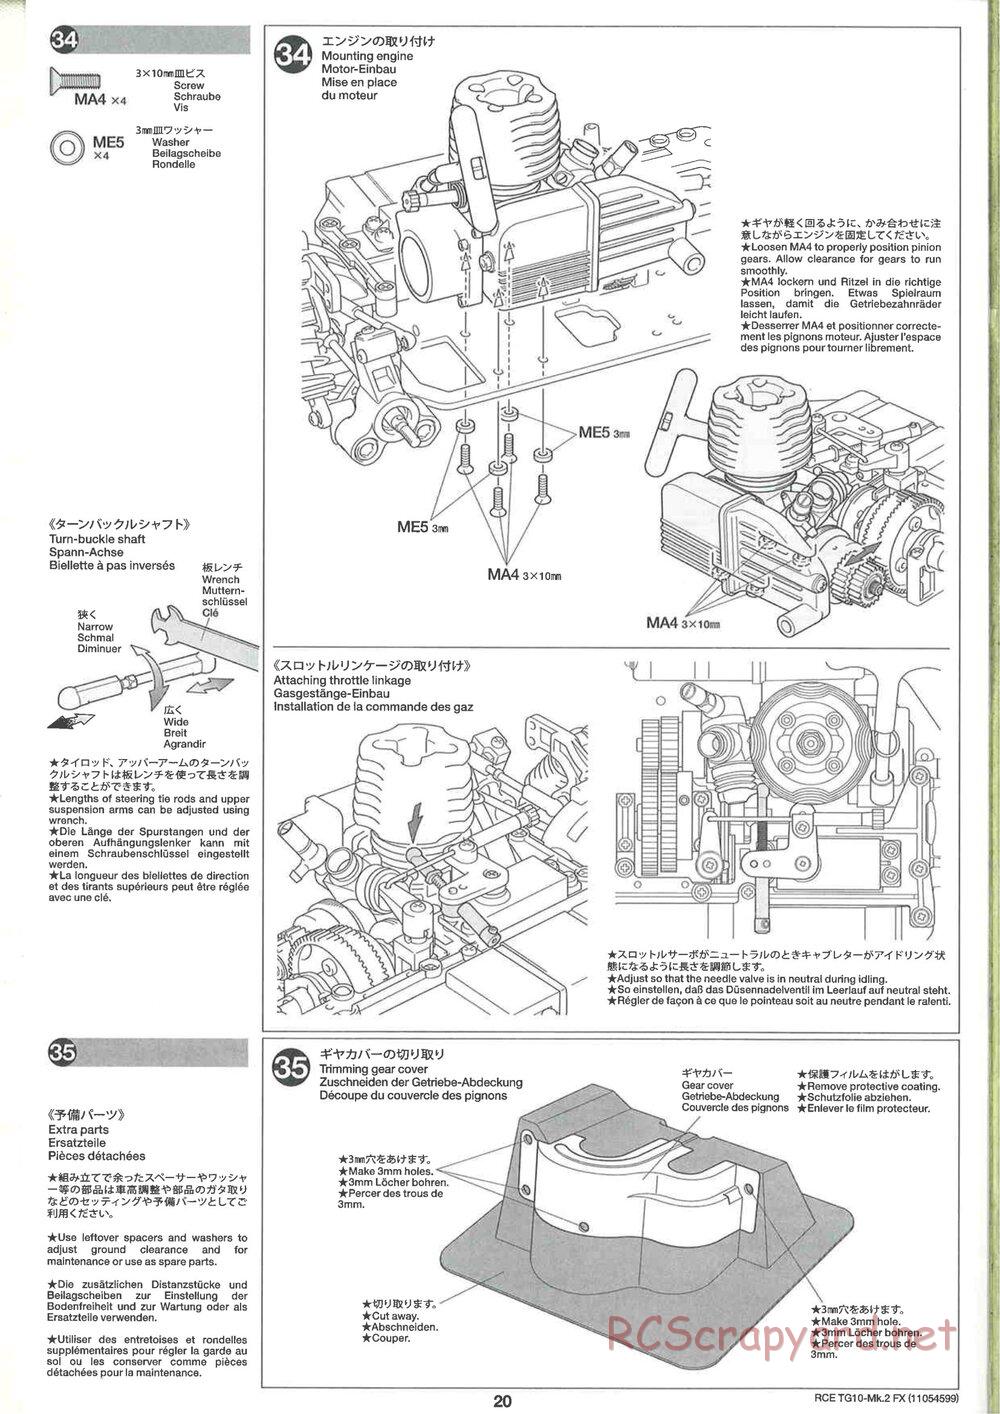 Tamiya - TG10 Mk.2 FX Chassis - Manual - Page 20